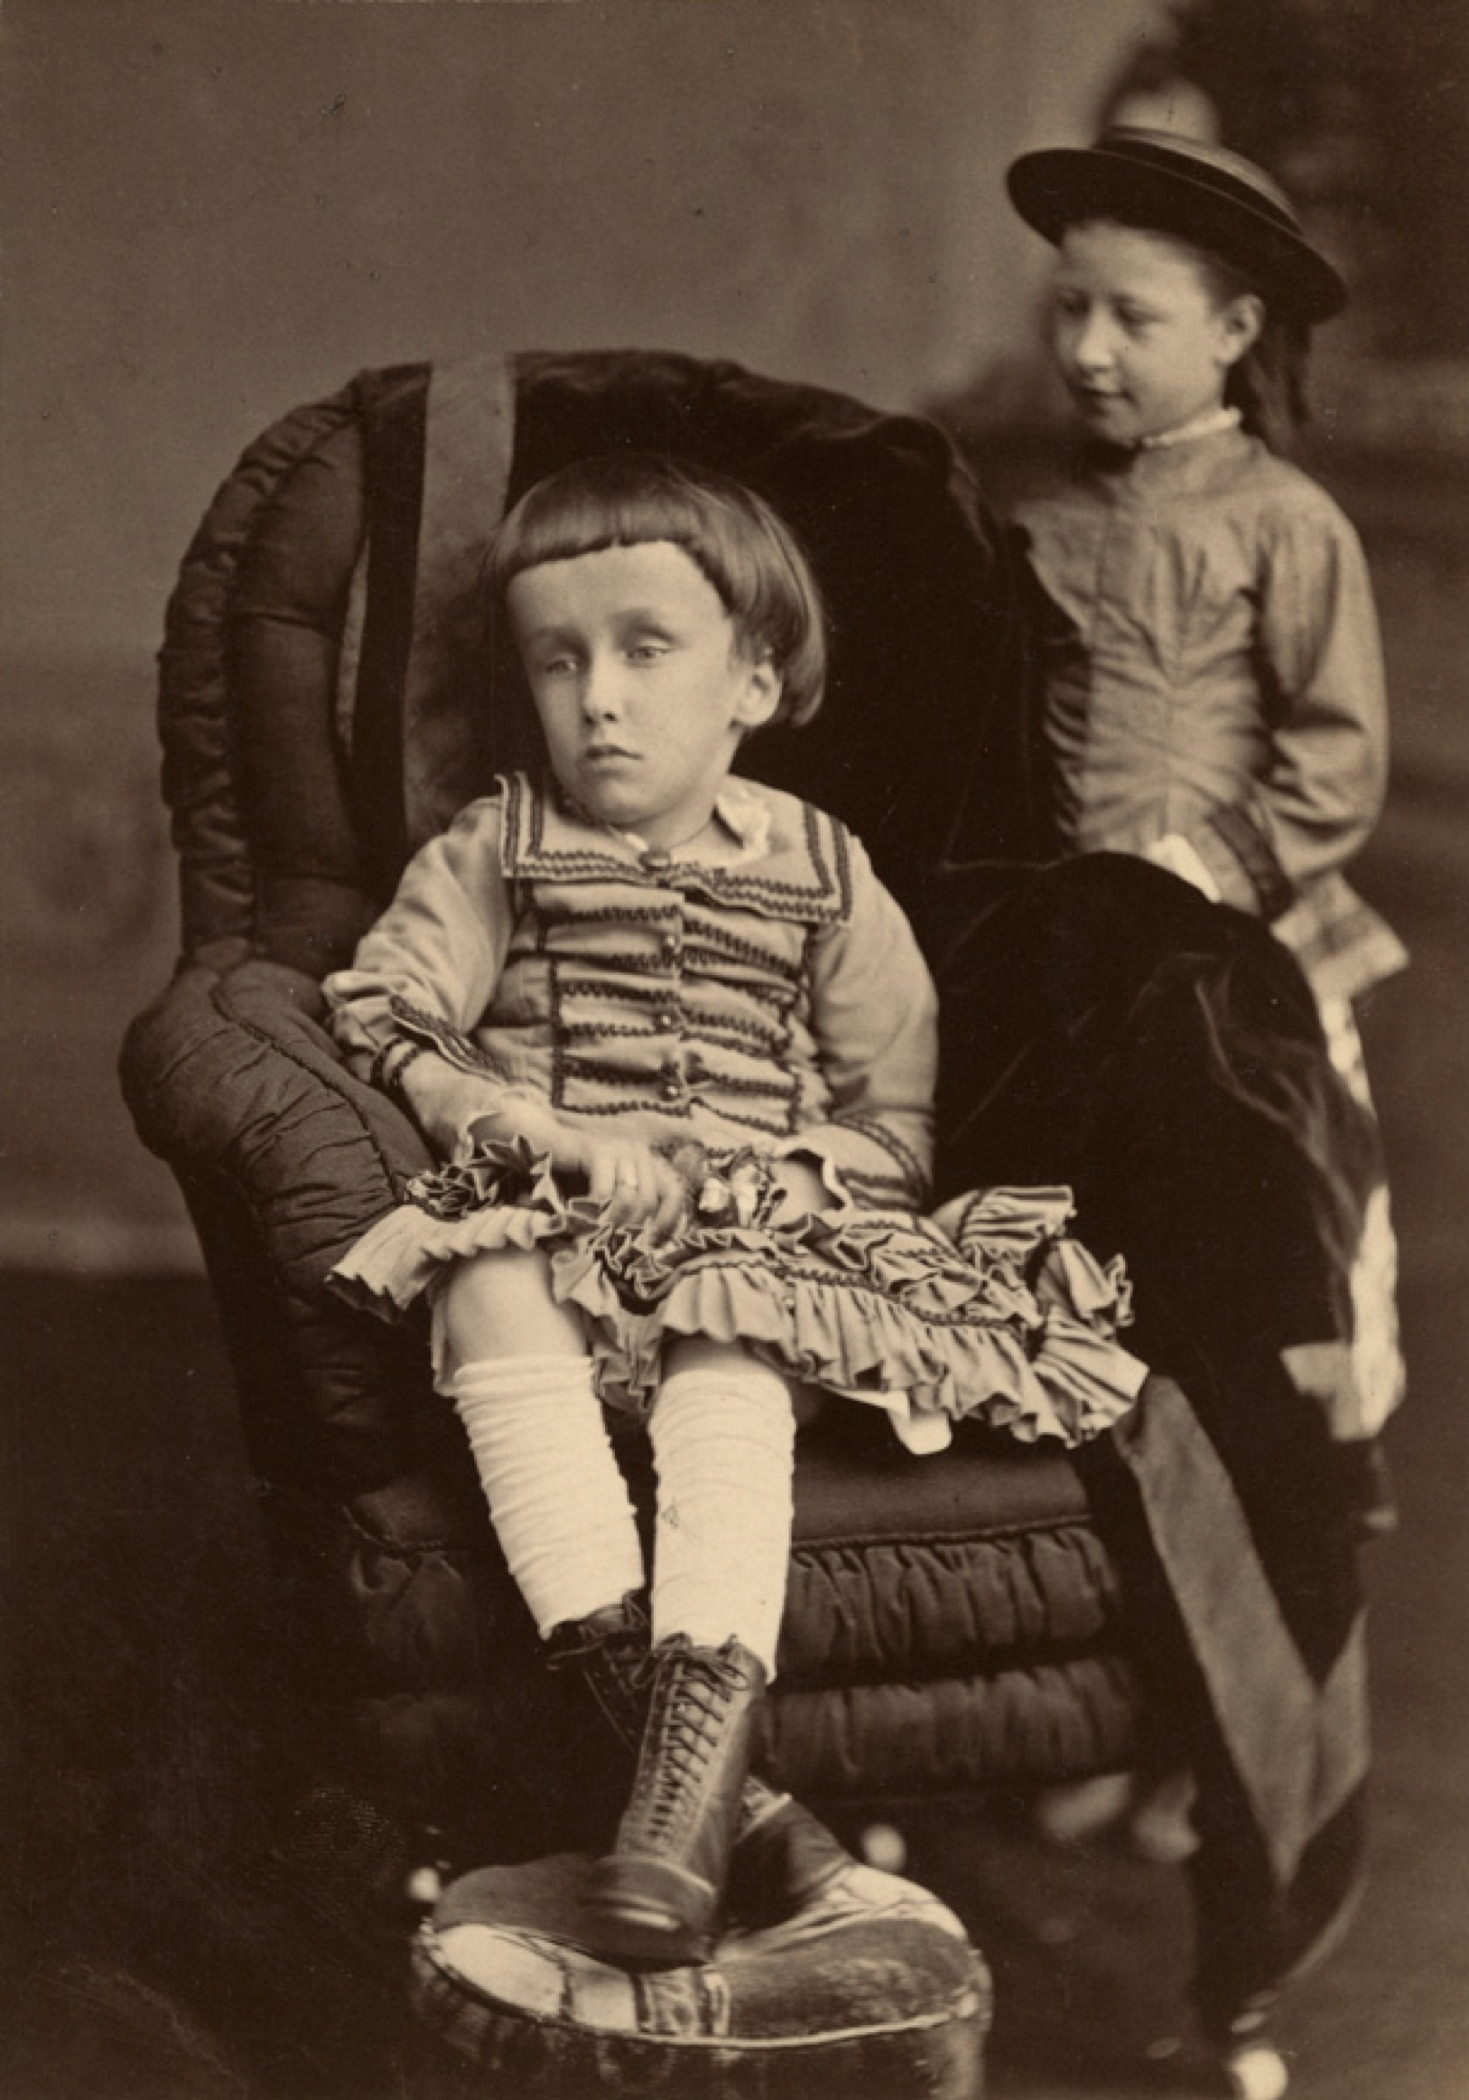 Photographie noir et blanc d'une petite fille (la jeune Mary Macdonald), assise sur une chaise, les jambes croisées devant elle, l'air absent. On dénote que sa tête est anormalement grosse, auréolée d’une chevelure noire coupée au carré avec une frange sur son large front. 